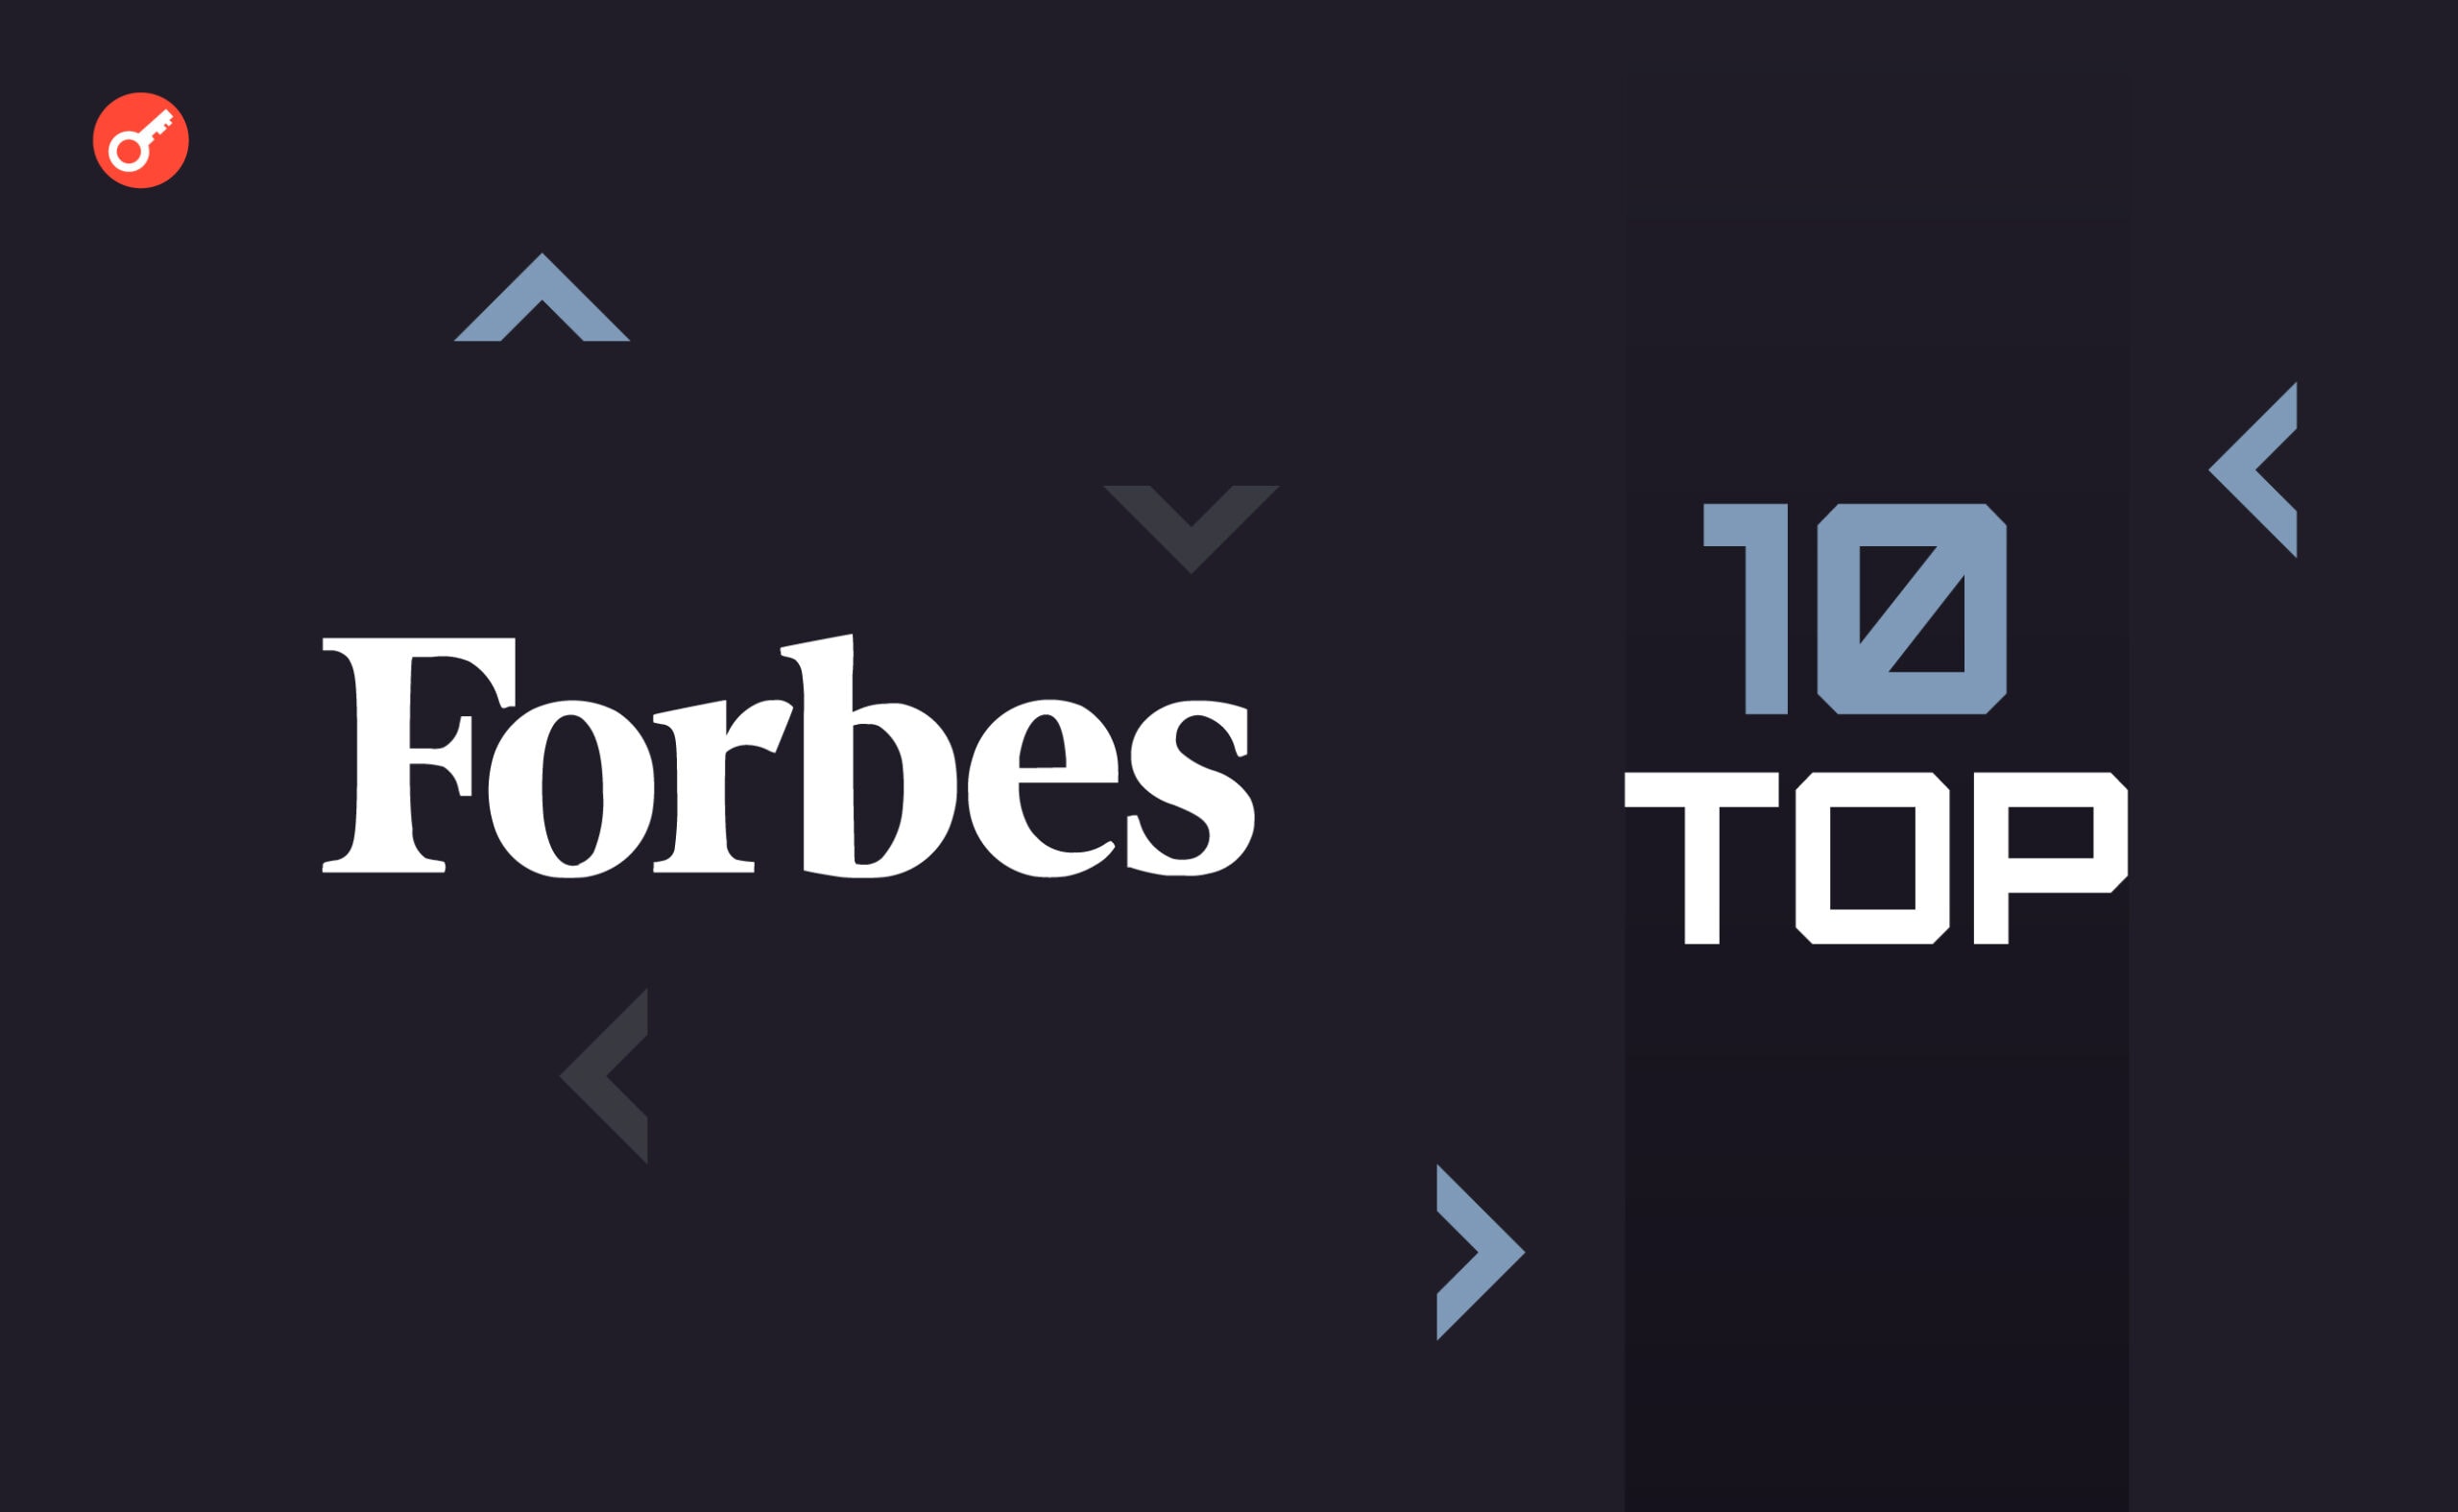 Forbes opublikował listę 10 najlepszych firm fintech w USA. Na liście znalazły się Ripple i OpenSea. Główny kolaż wiadomości.